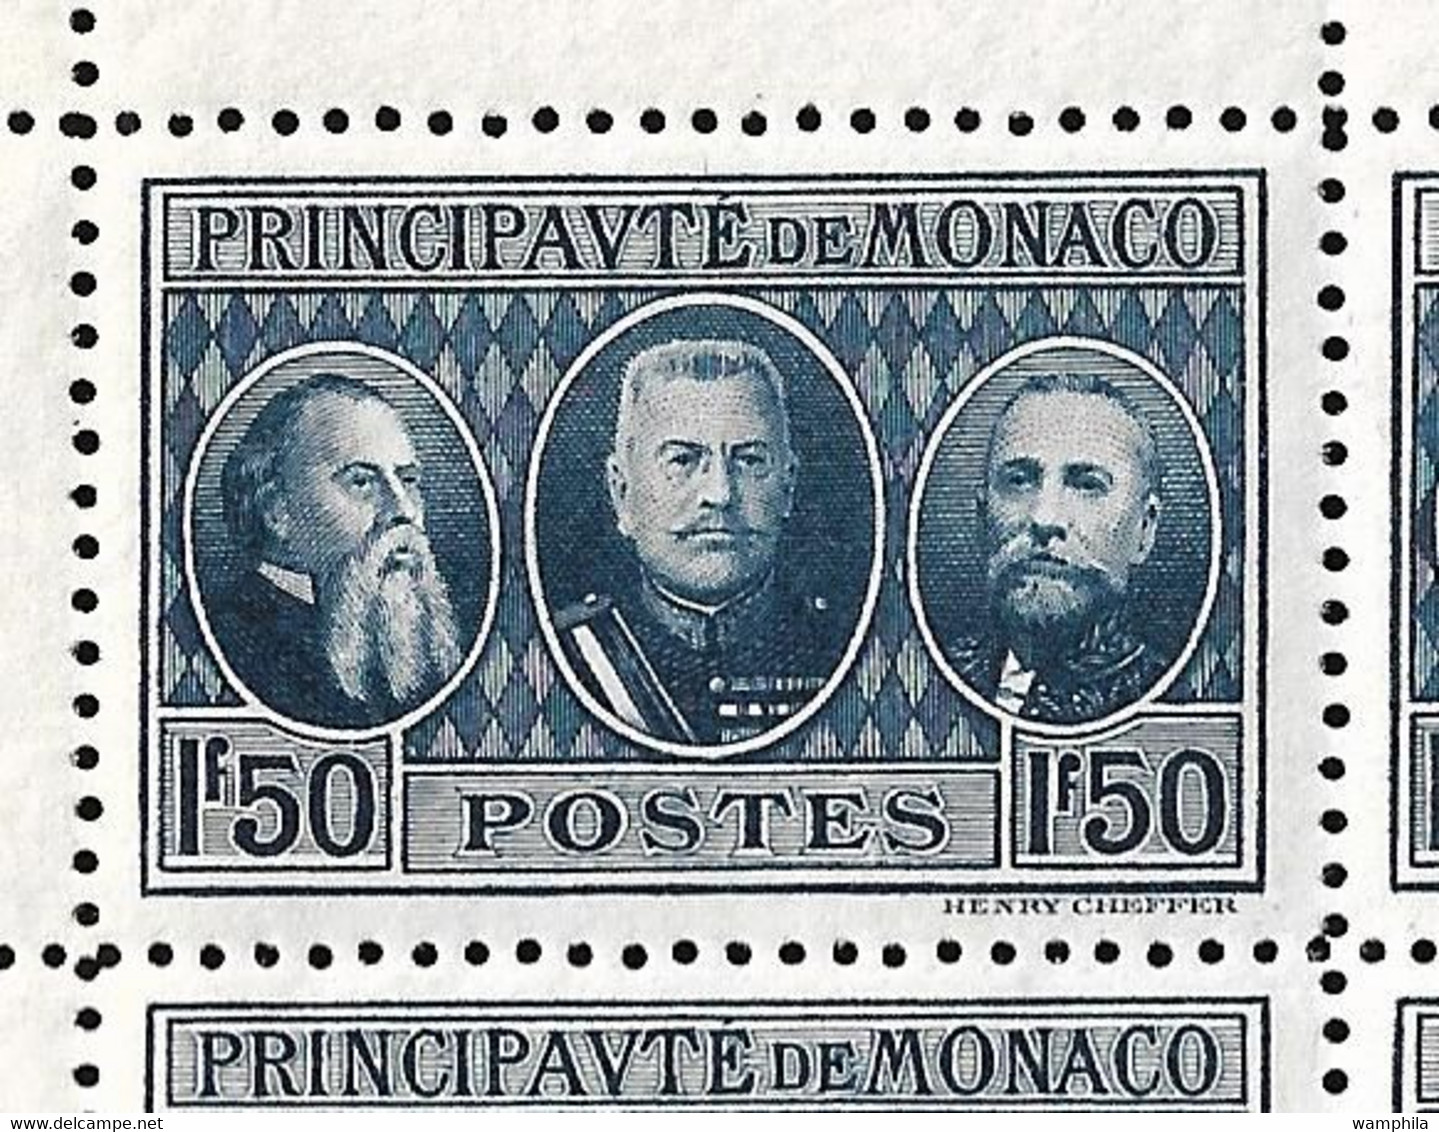 Monaco N°111** à 113** les 3 feuilles avec  variété papiers Filigranés BFK RIVES. Cote + 1500€